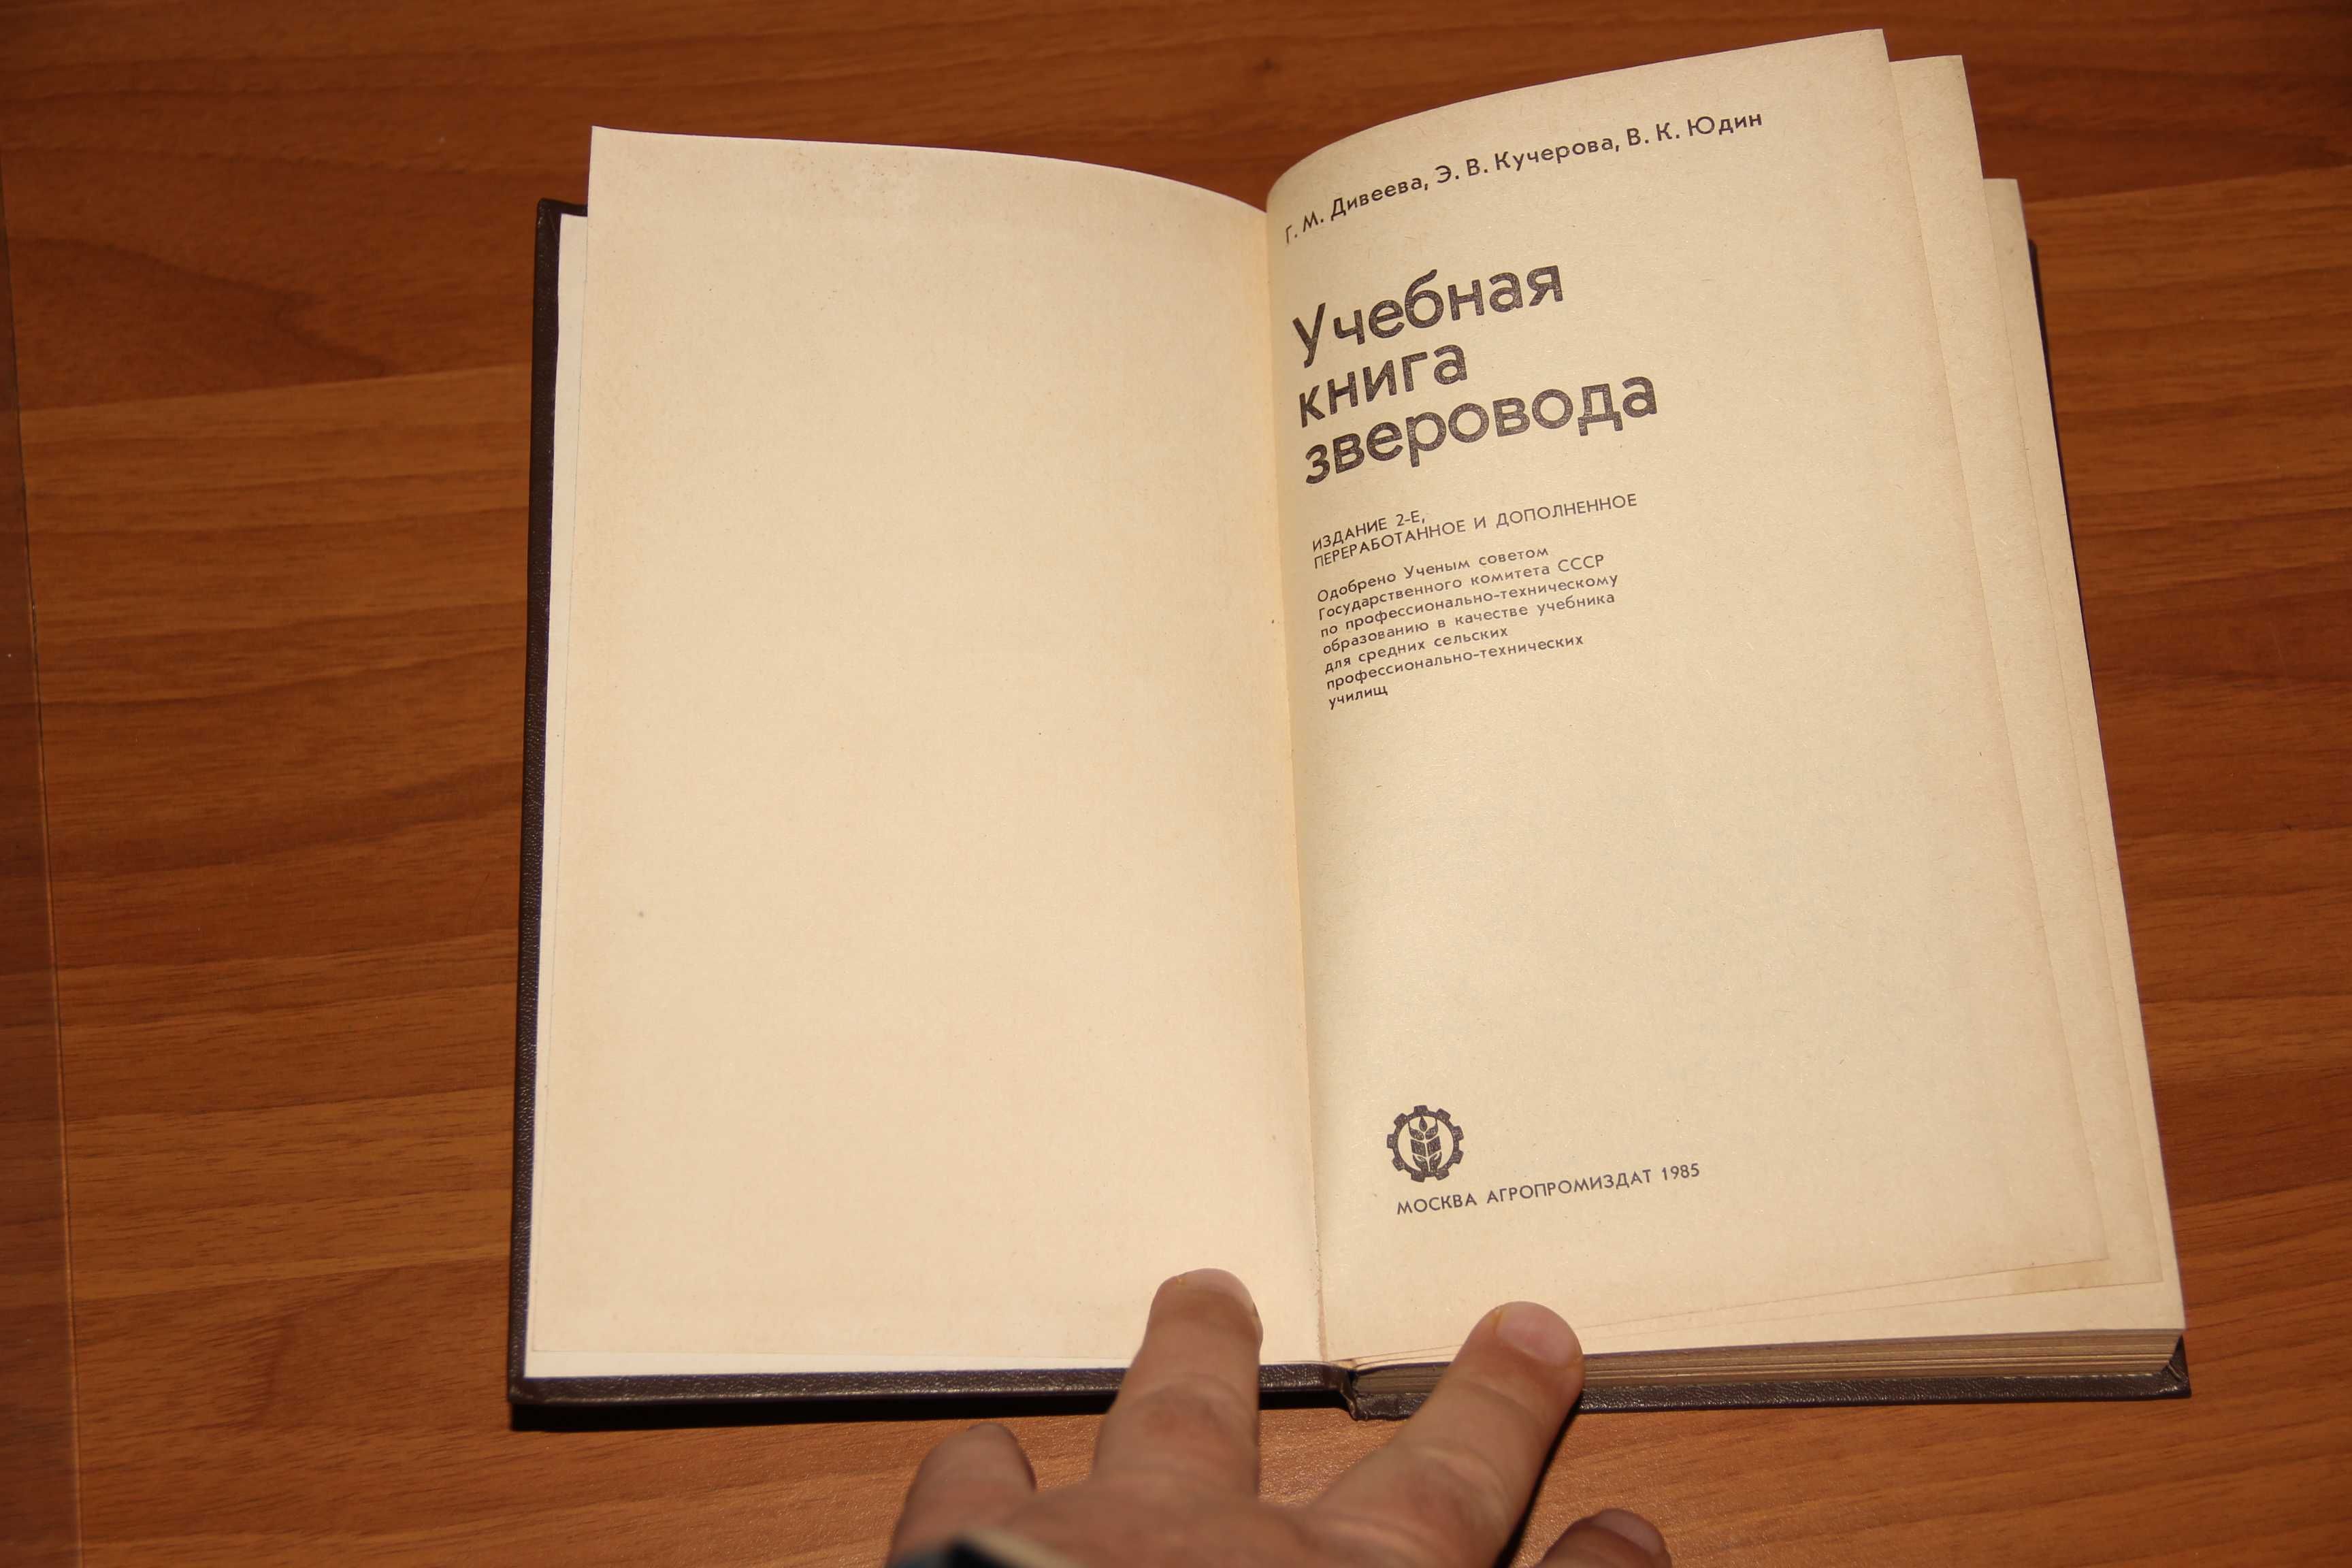 Учебная книга зверовода. Дивеева Г. и др. М.: Агропромиздат, 1985